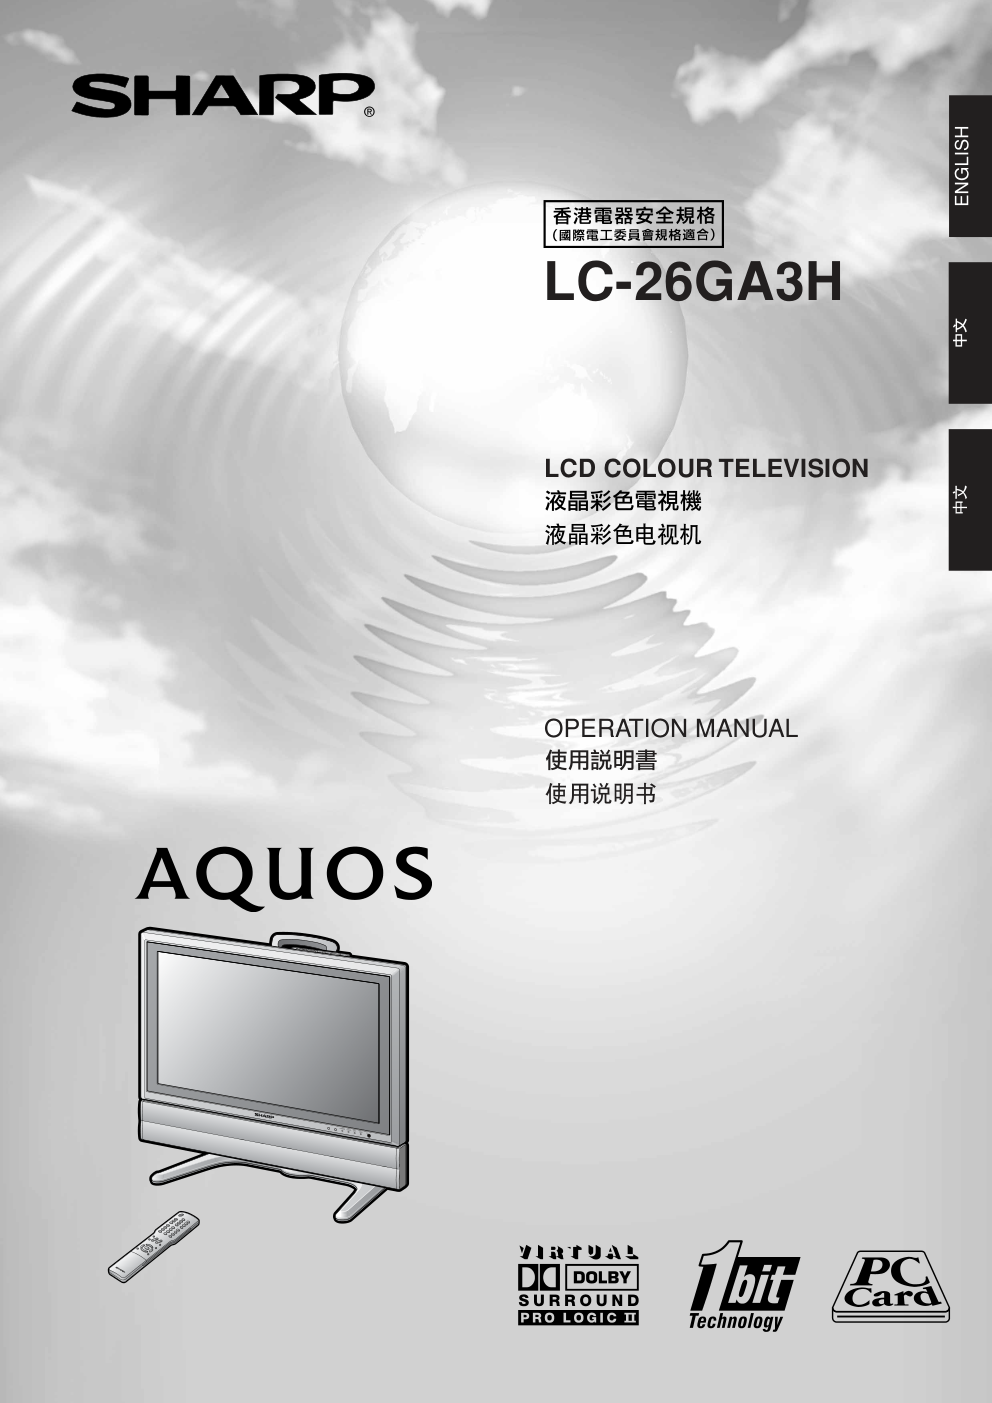 声宝LC-26GA3H型液晶电视机说明书-0